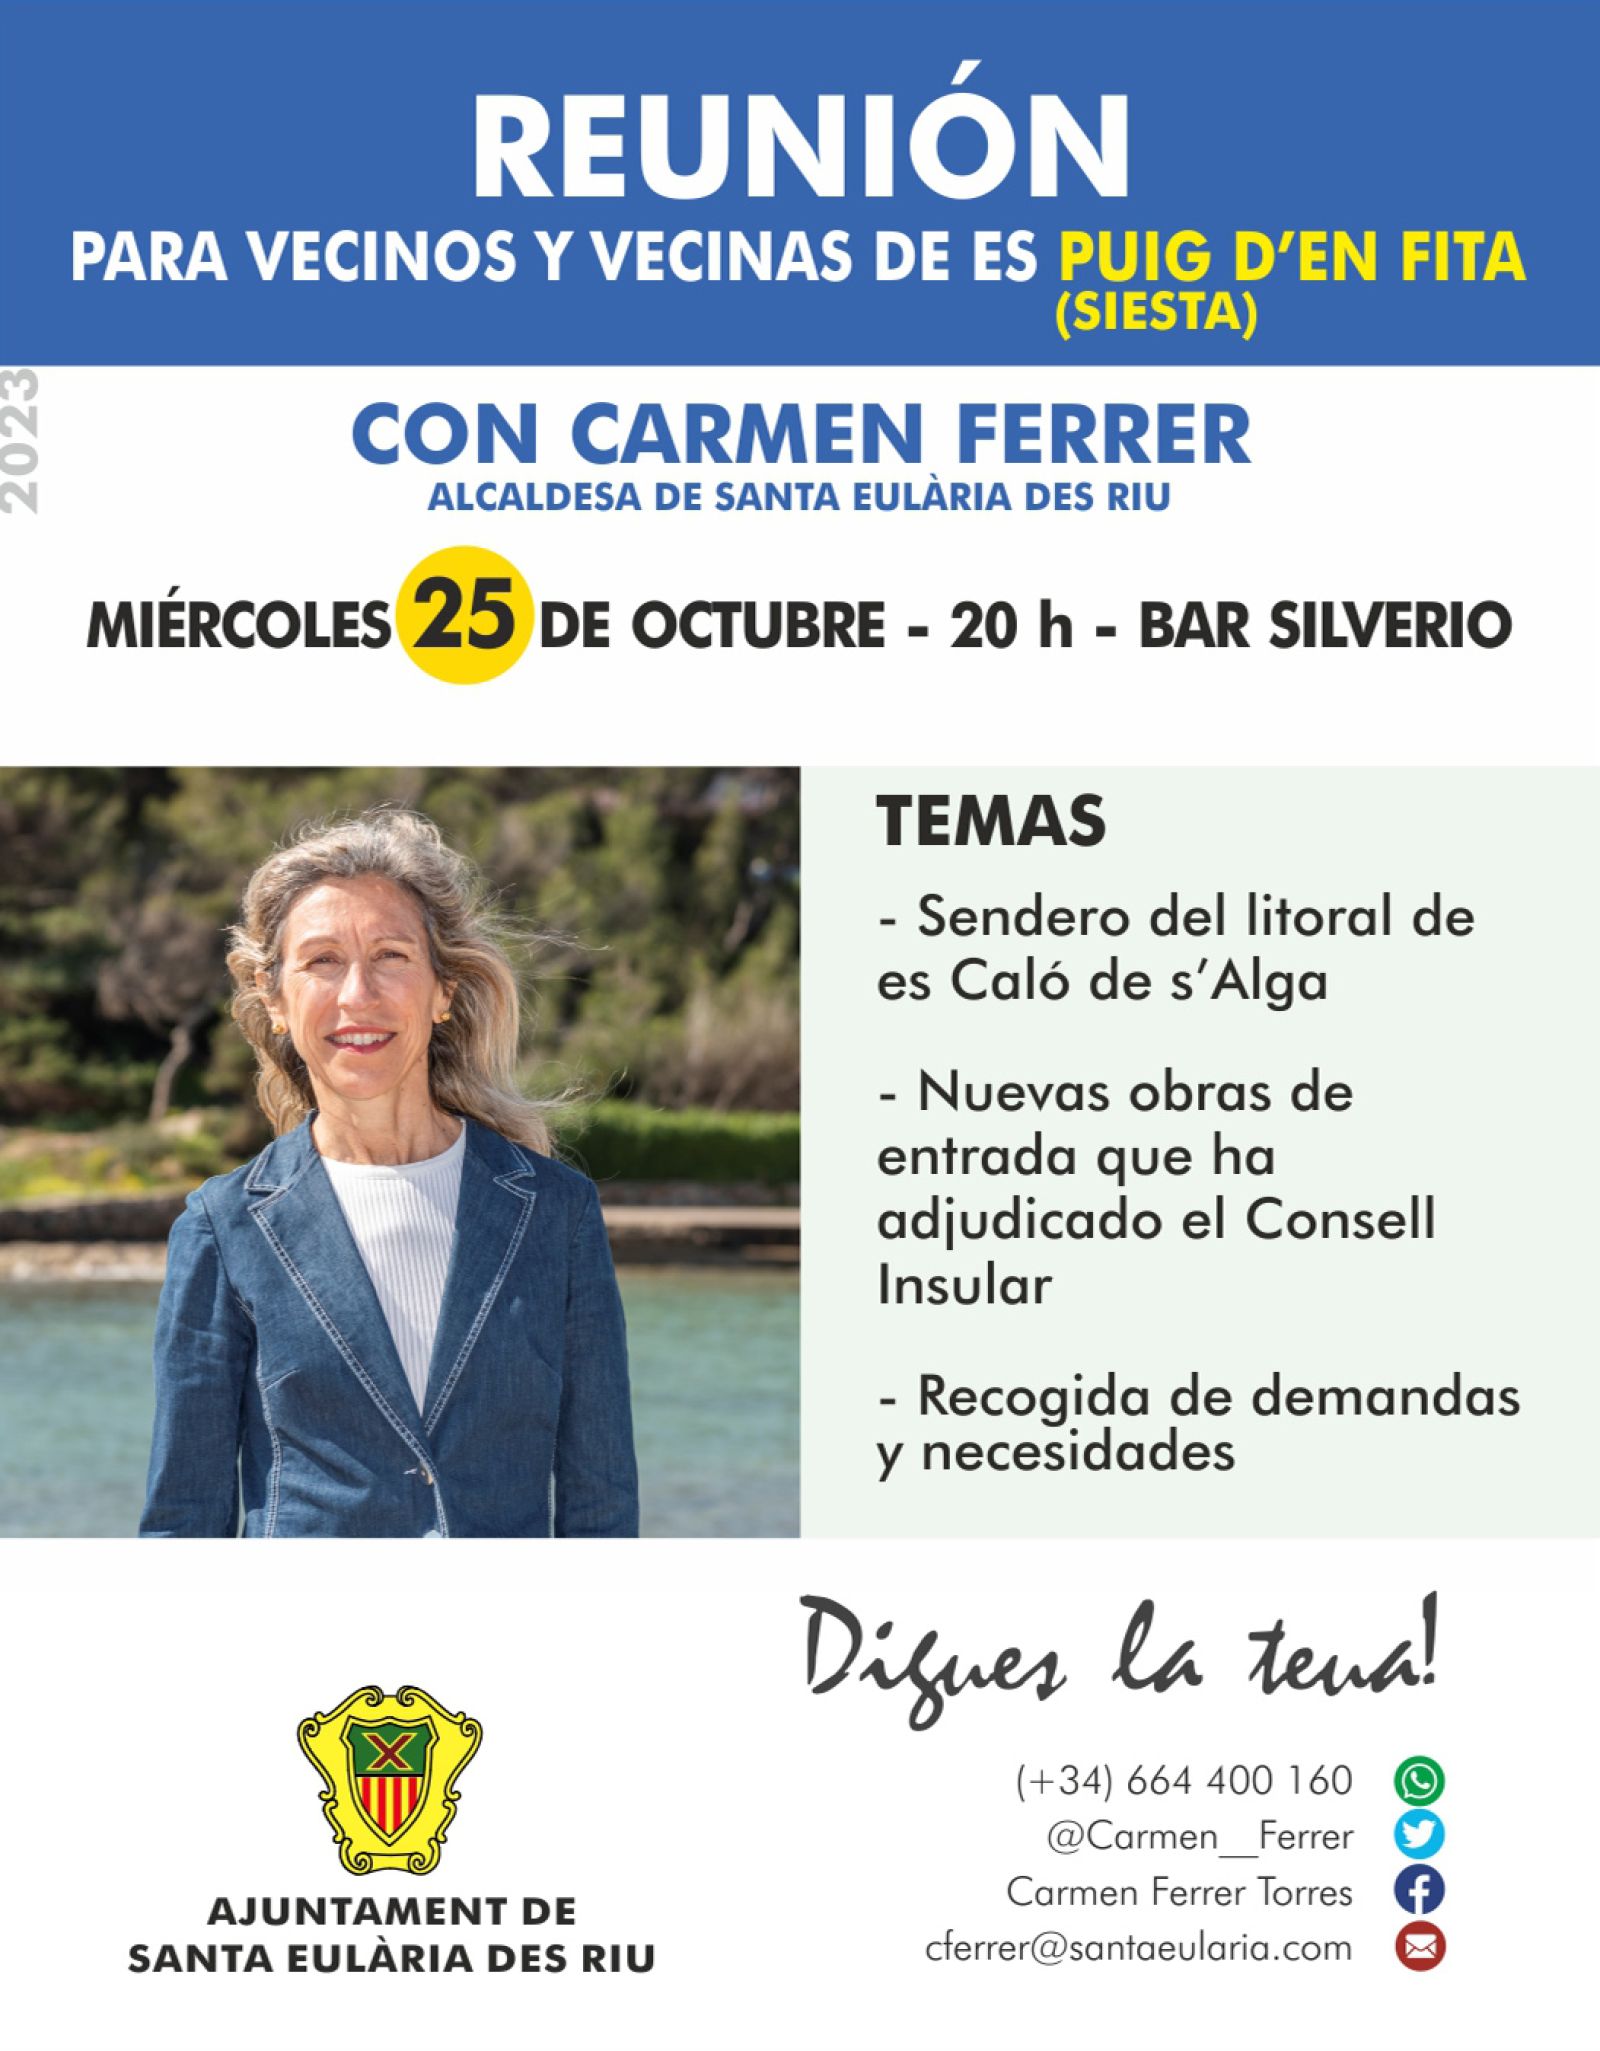 Nuevo acceso al Puig d'en Fita y el sendero litoral des Caló de s'Alga, temas de un nuevo Digues la Teua